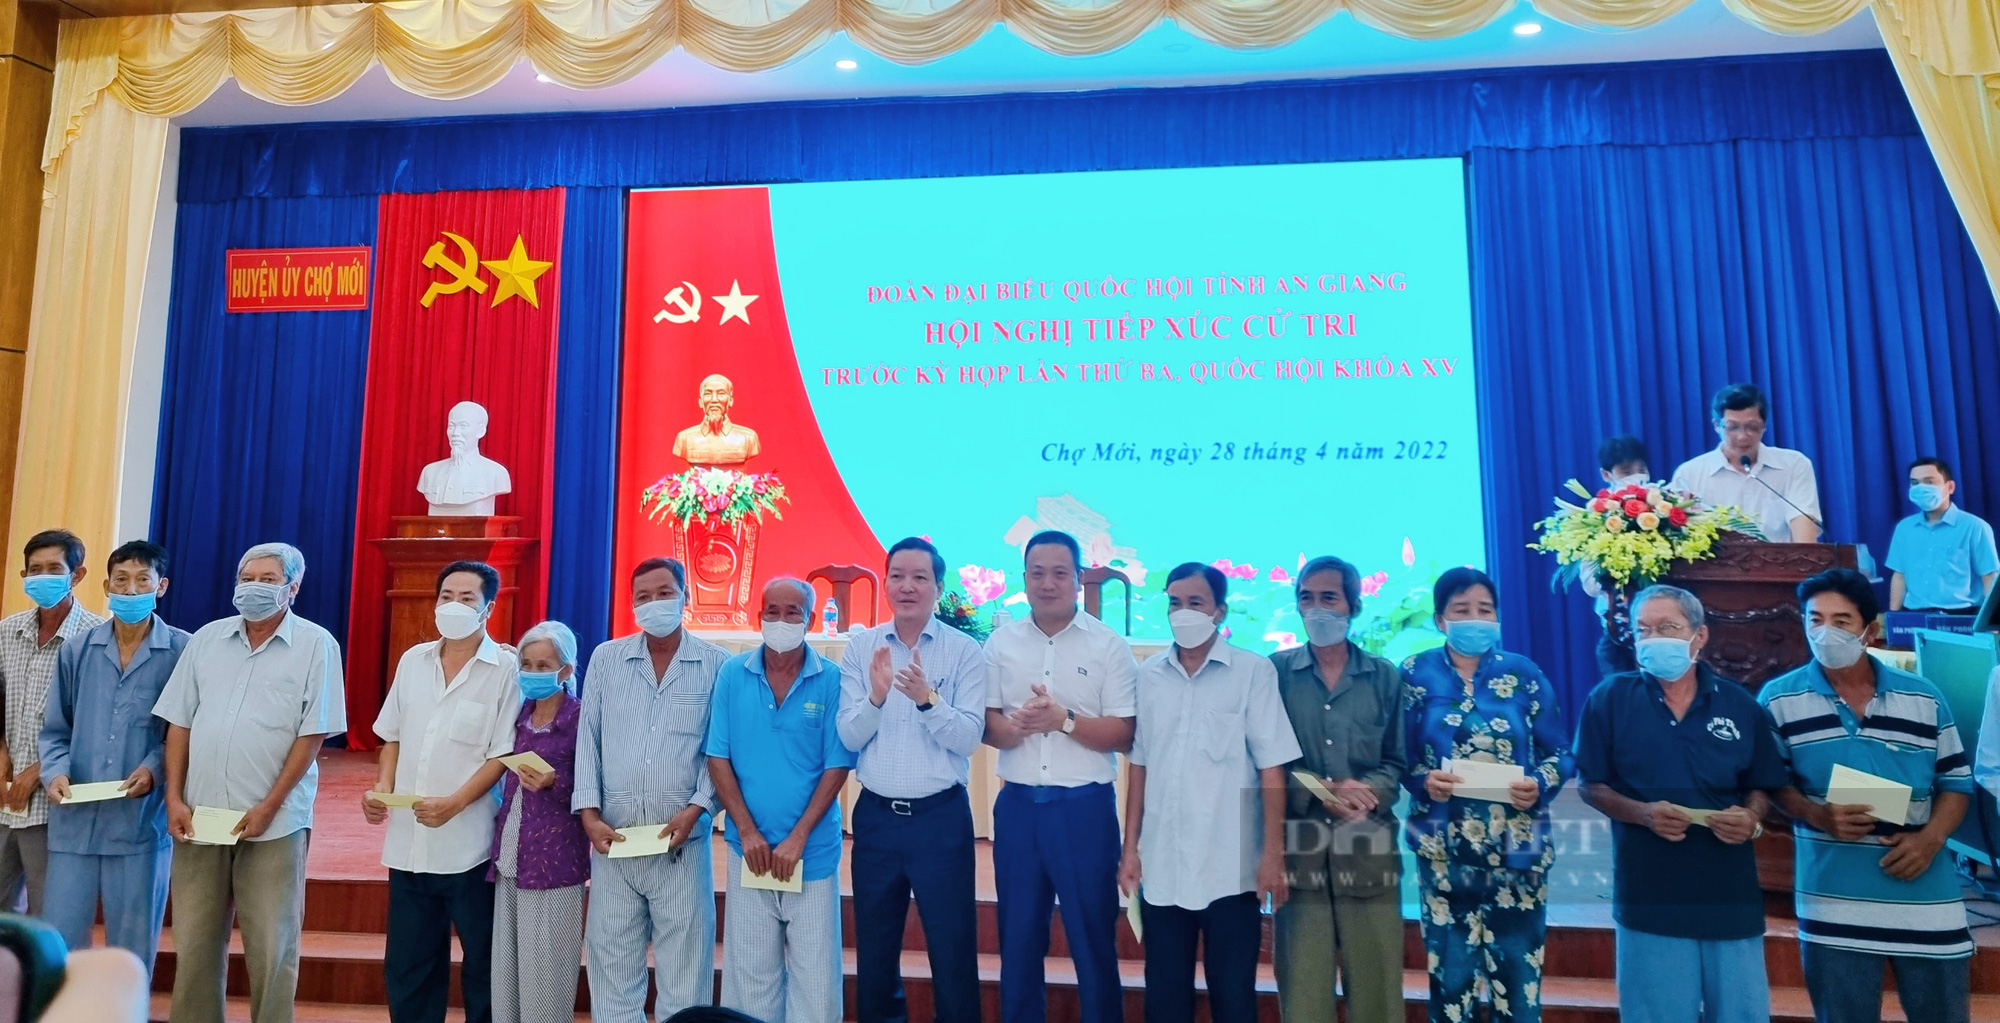 Chủ tịch Hội NDVN Lương Quốc Đoàn trả lời cử tri huyện Chợ Mới, tỉnh An Giang về giống cây trồng, vật nuôi- Ảnh 4.